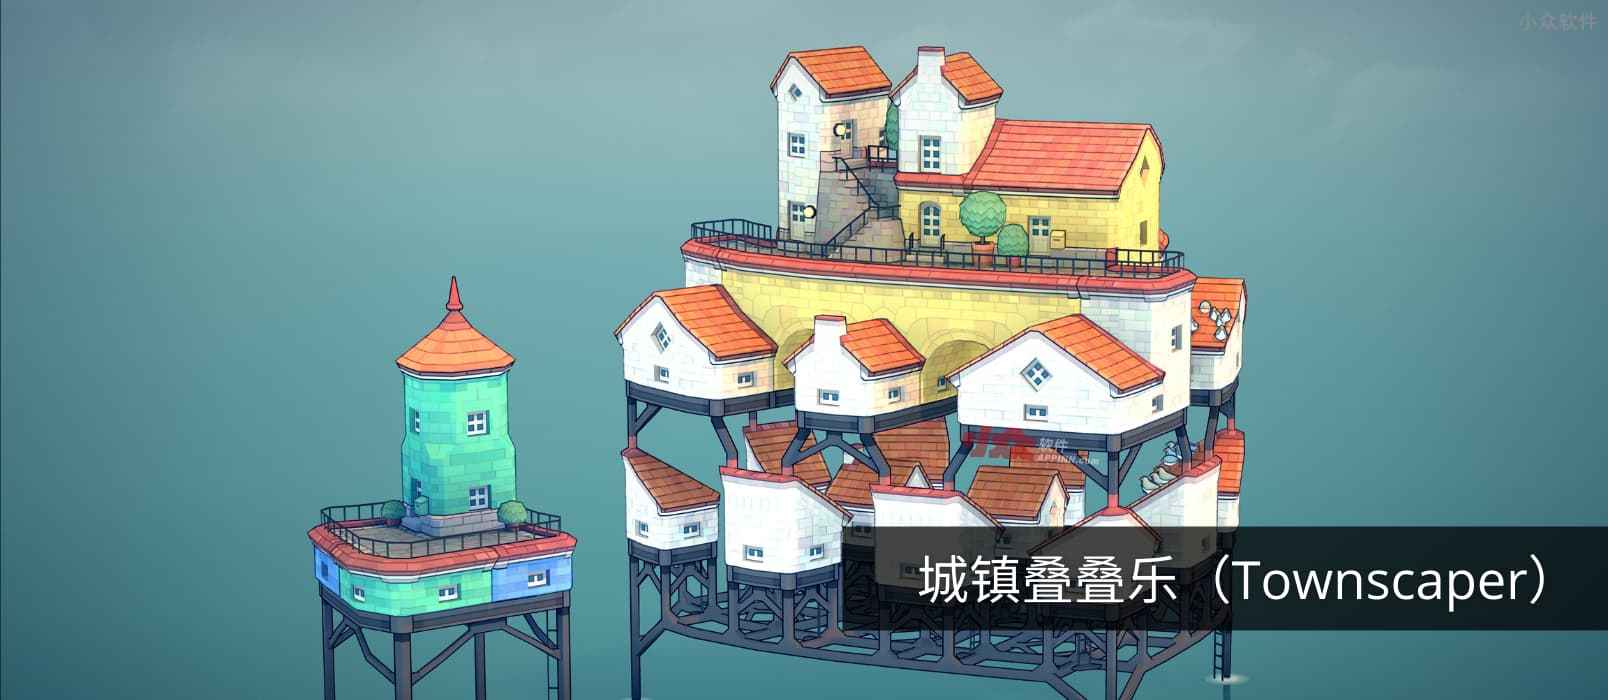 城镇叠叠乐 – 自由度极高的古城镇建造游戏